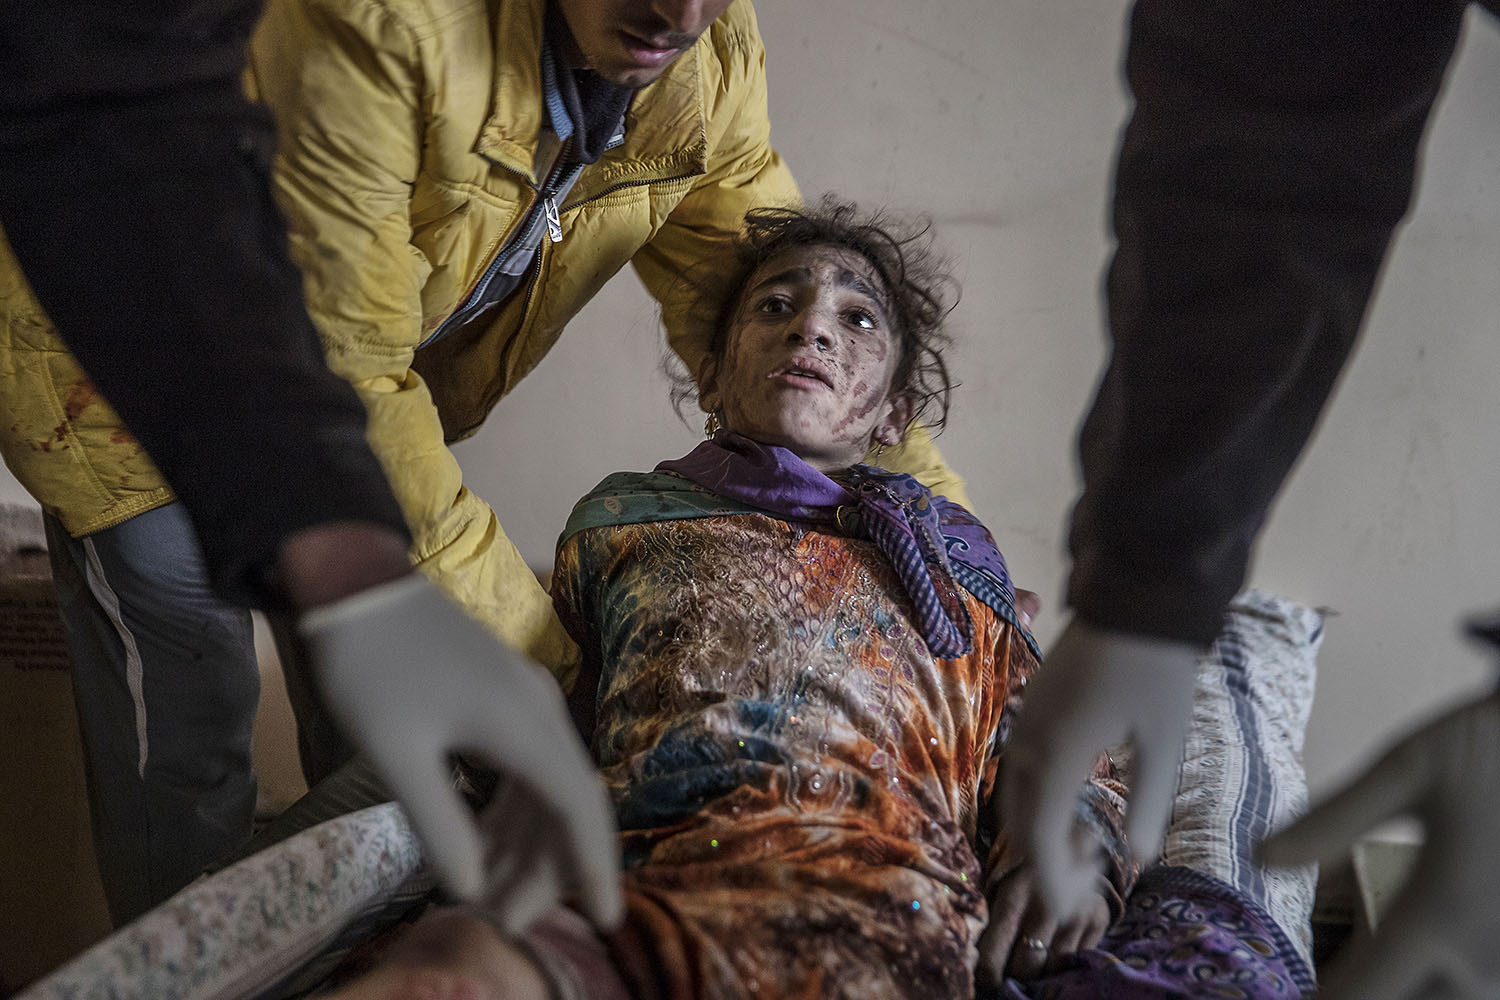 foto : magnus wennman : tolvåriga wijdan moofik har skadats svårt. såren är överallt. sjukvårdare pressar med händerna över de värsta skadorna för att hejda blödningen. fältsjukhuset vid irakiska frontlinjen i mosul. hit kommer skadade och dödade civila och militärer från striderna i mosul. de som inte avlider får akut sjukvård och körs vidare till sjukhuset i erbil.